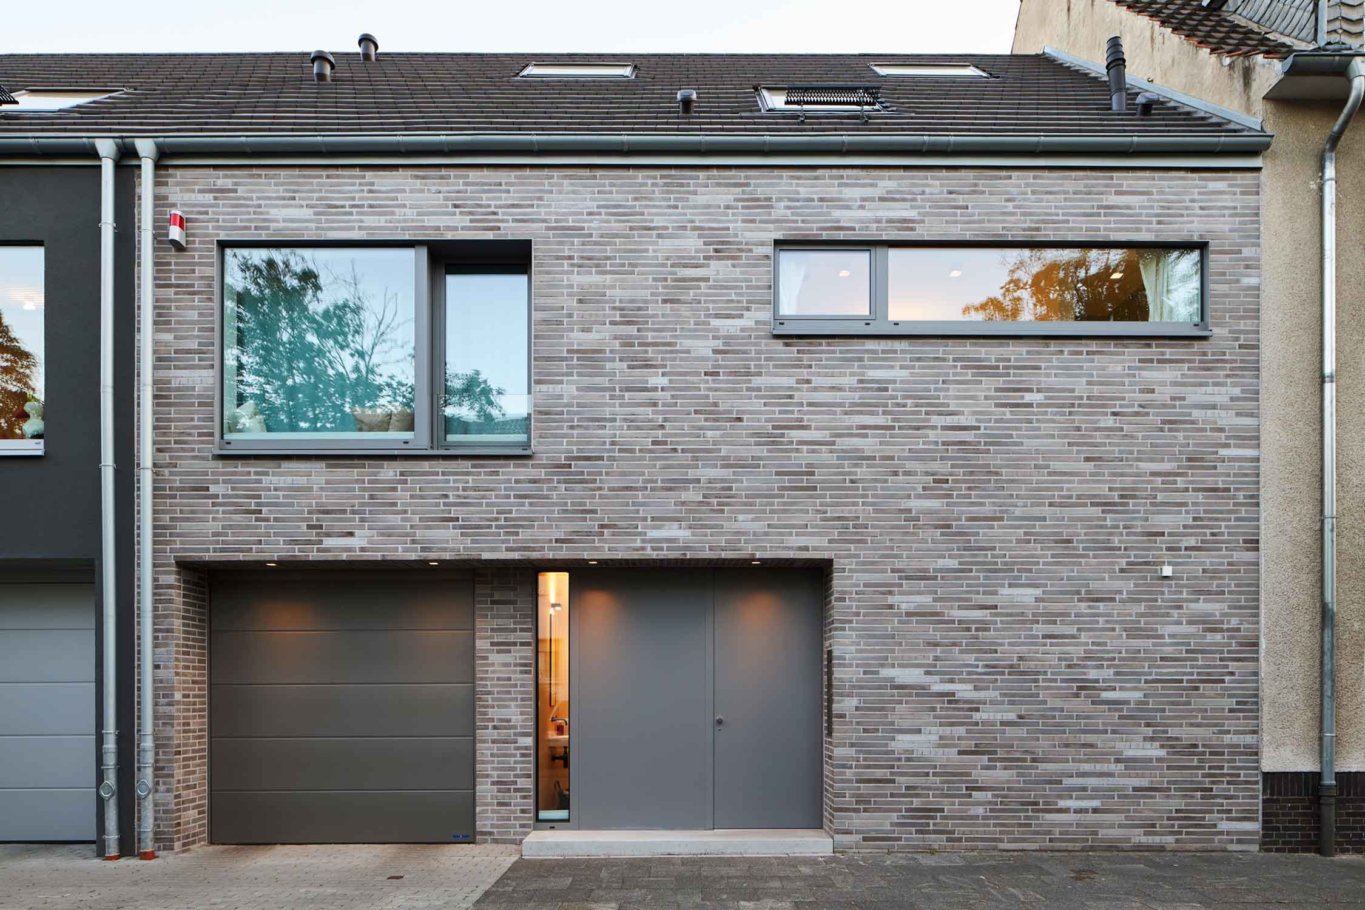 Architekturfotografie Lioba Schneider: Ein Doppeleinfamilienhaus in Bonn bei Dämmerung von der Strasse aus gesehen. Die Fassaden sind unterschiedlich gestaltet- anthrazitfarbener putz und einmal heller Klinker.